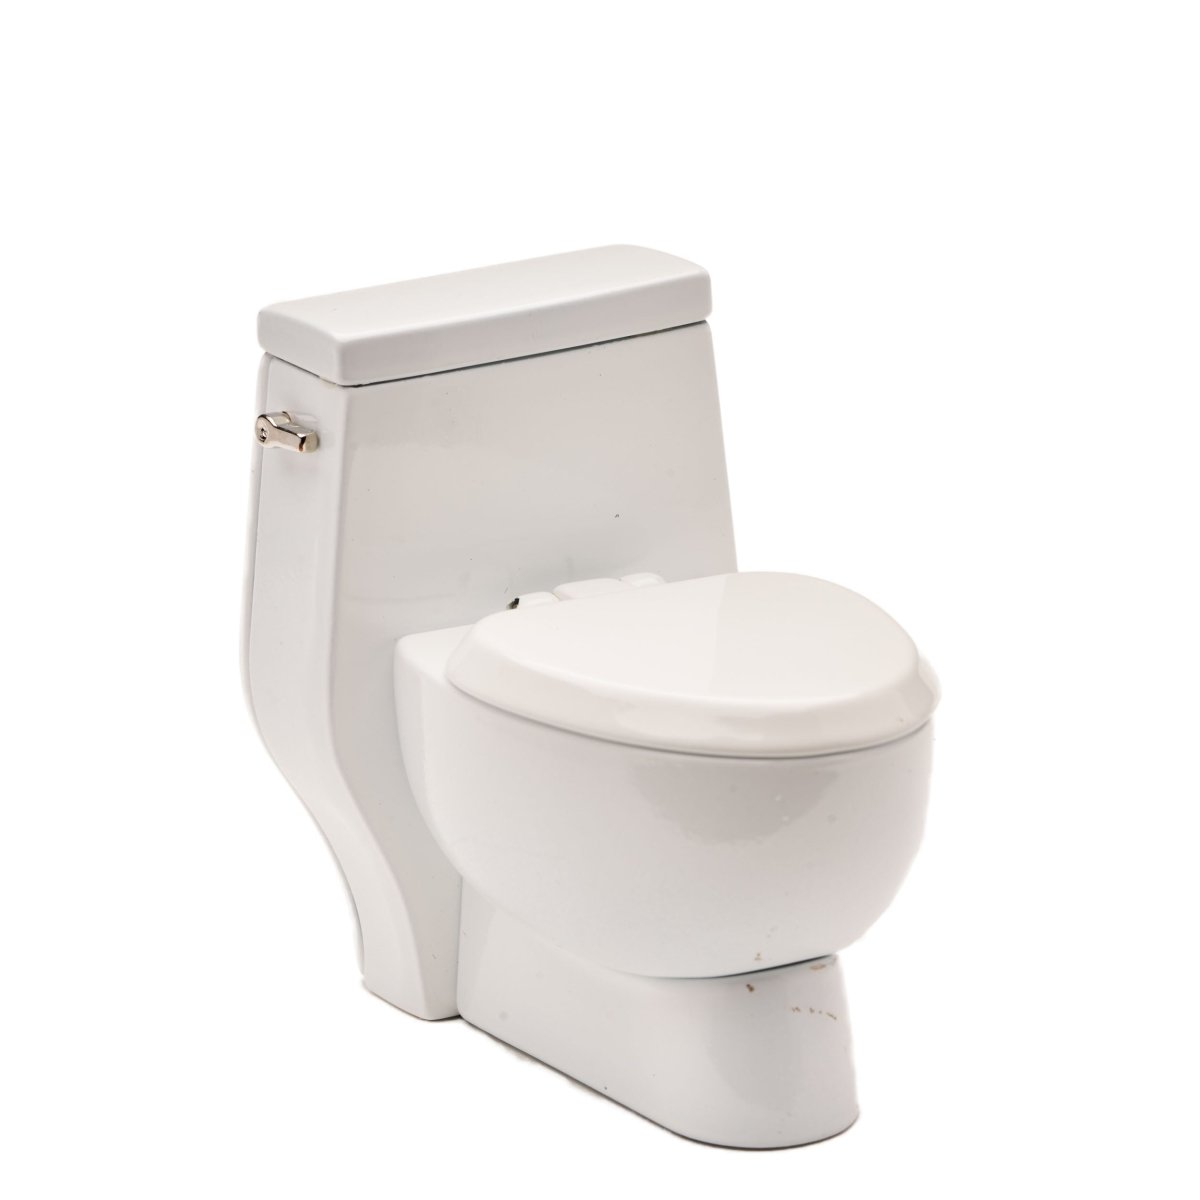 Toilet White - Tokyobay